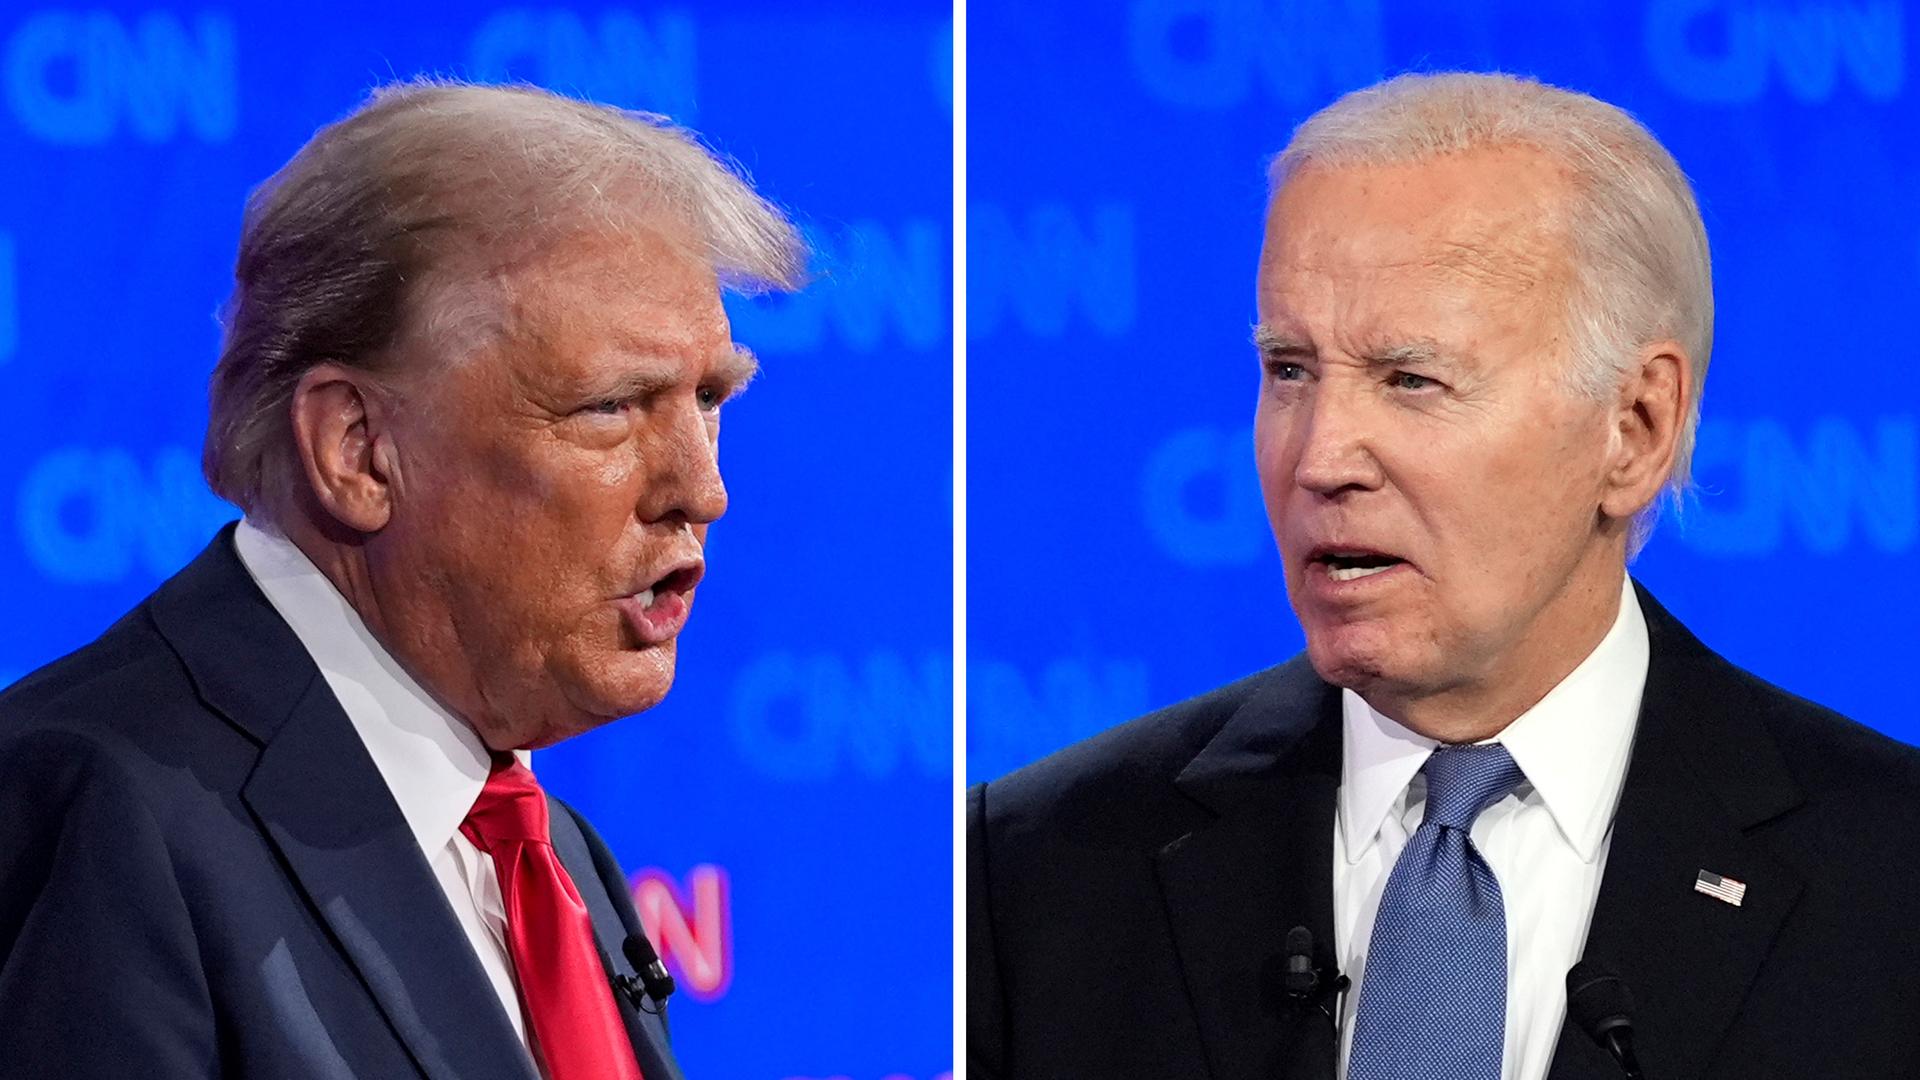 Diese Bildkombination zeigt den ehemaligen US-Präsidenten Trump und den derzeitigen Amtsinhaber Biden während eines vom Fernsehsender CNN veranstalteten TV-Duells.